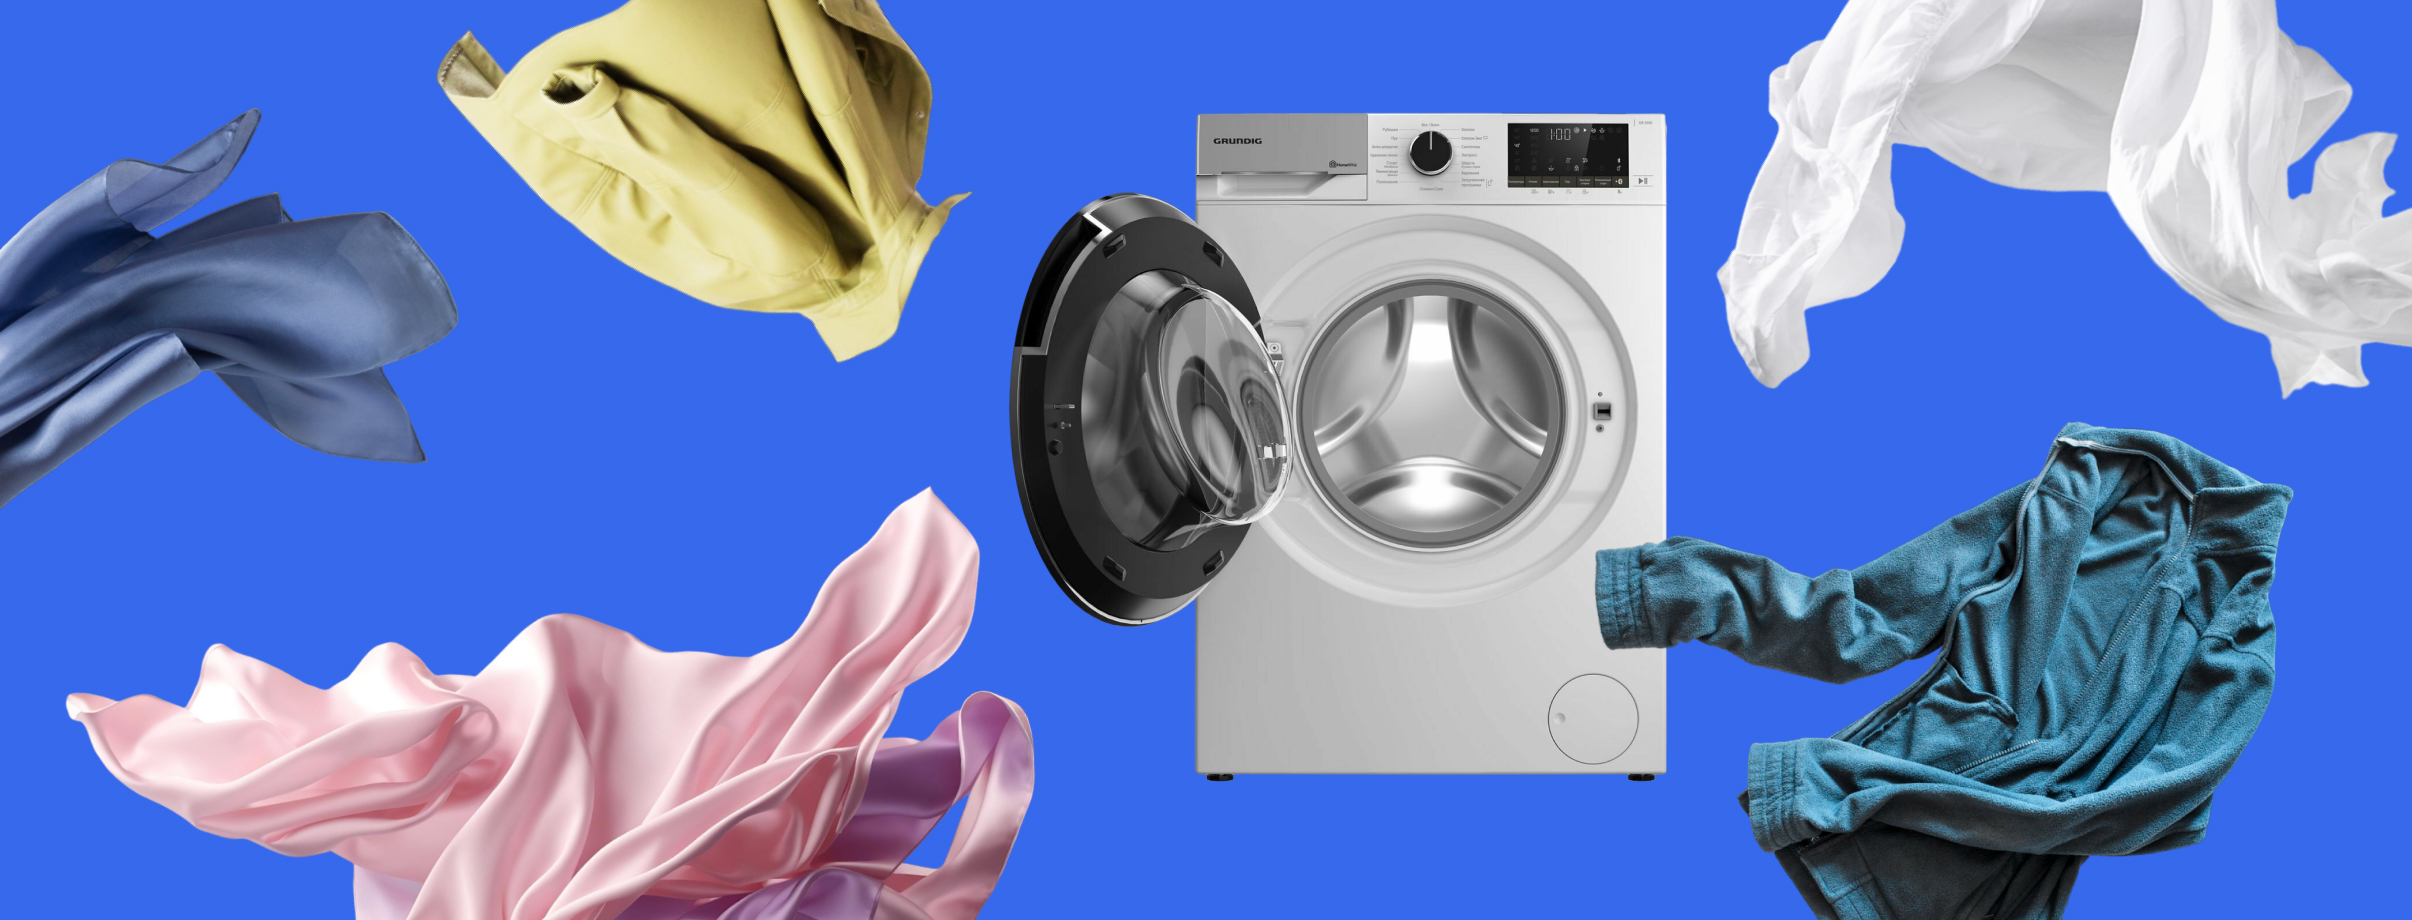  выбрать стиральную машину под раковину: критерии правильного выбора .